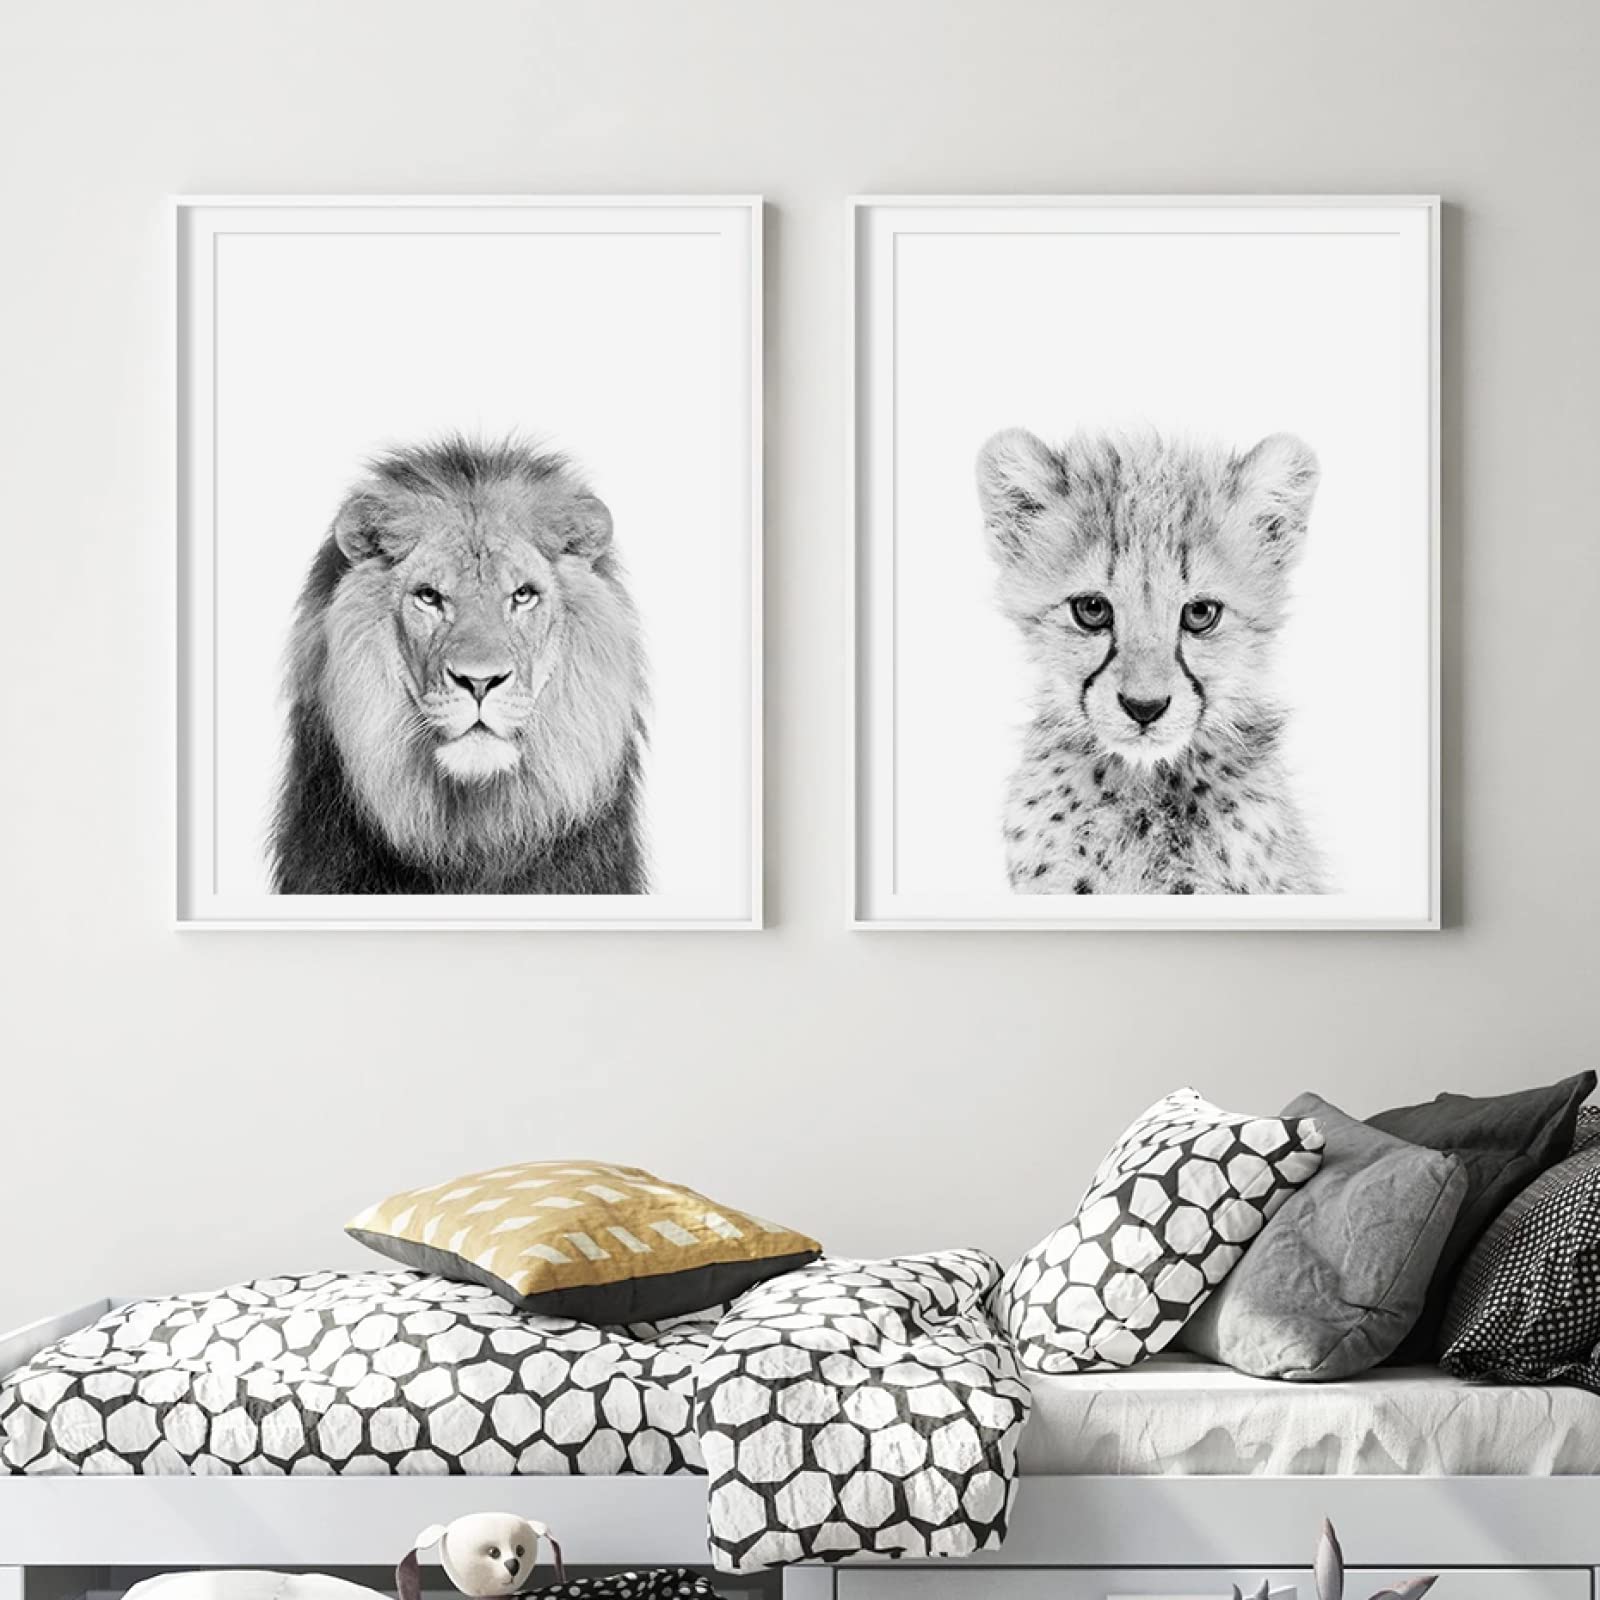 Schwarz-Weiß-Tiere Wand Bilder Safari Löwen Tiere Poster Kunstdrucke Baby Kinderzimmer Dekoration Leinwand Gemälde Wandbilder für Wohnkultur 40 x 60 cm x 2 ungerahmt